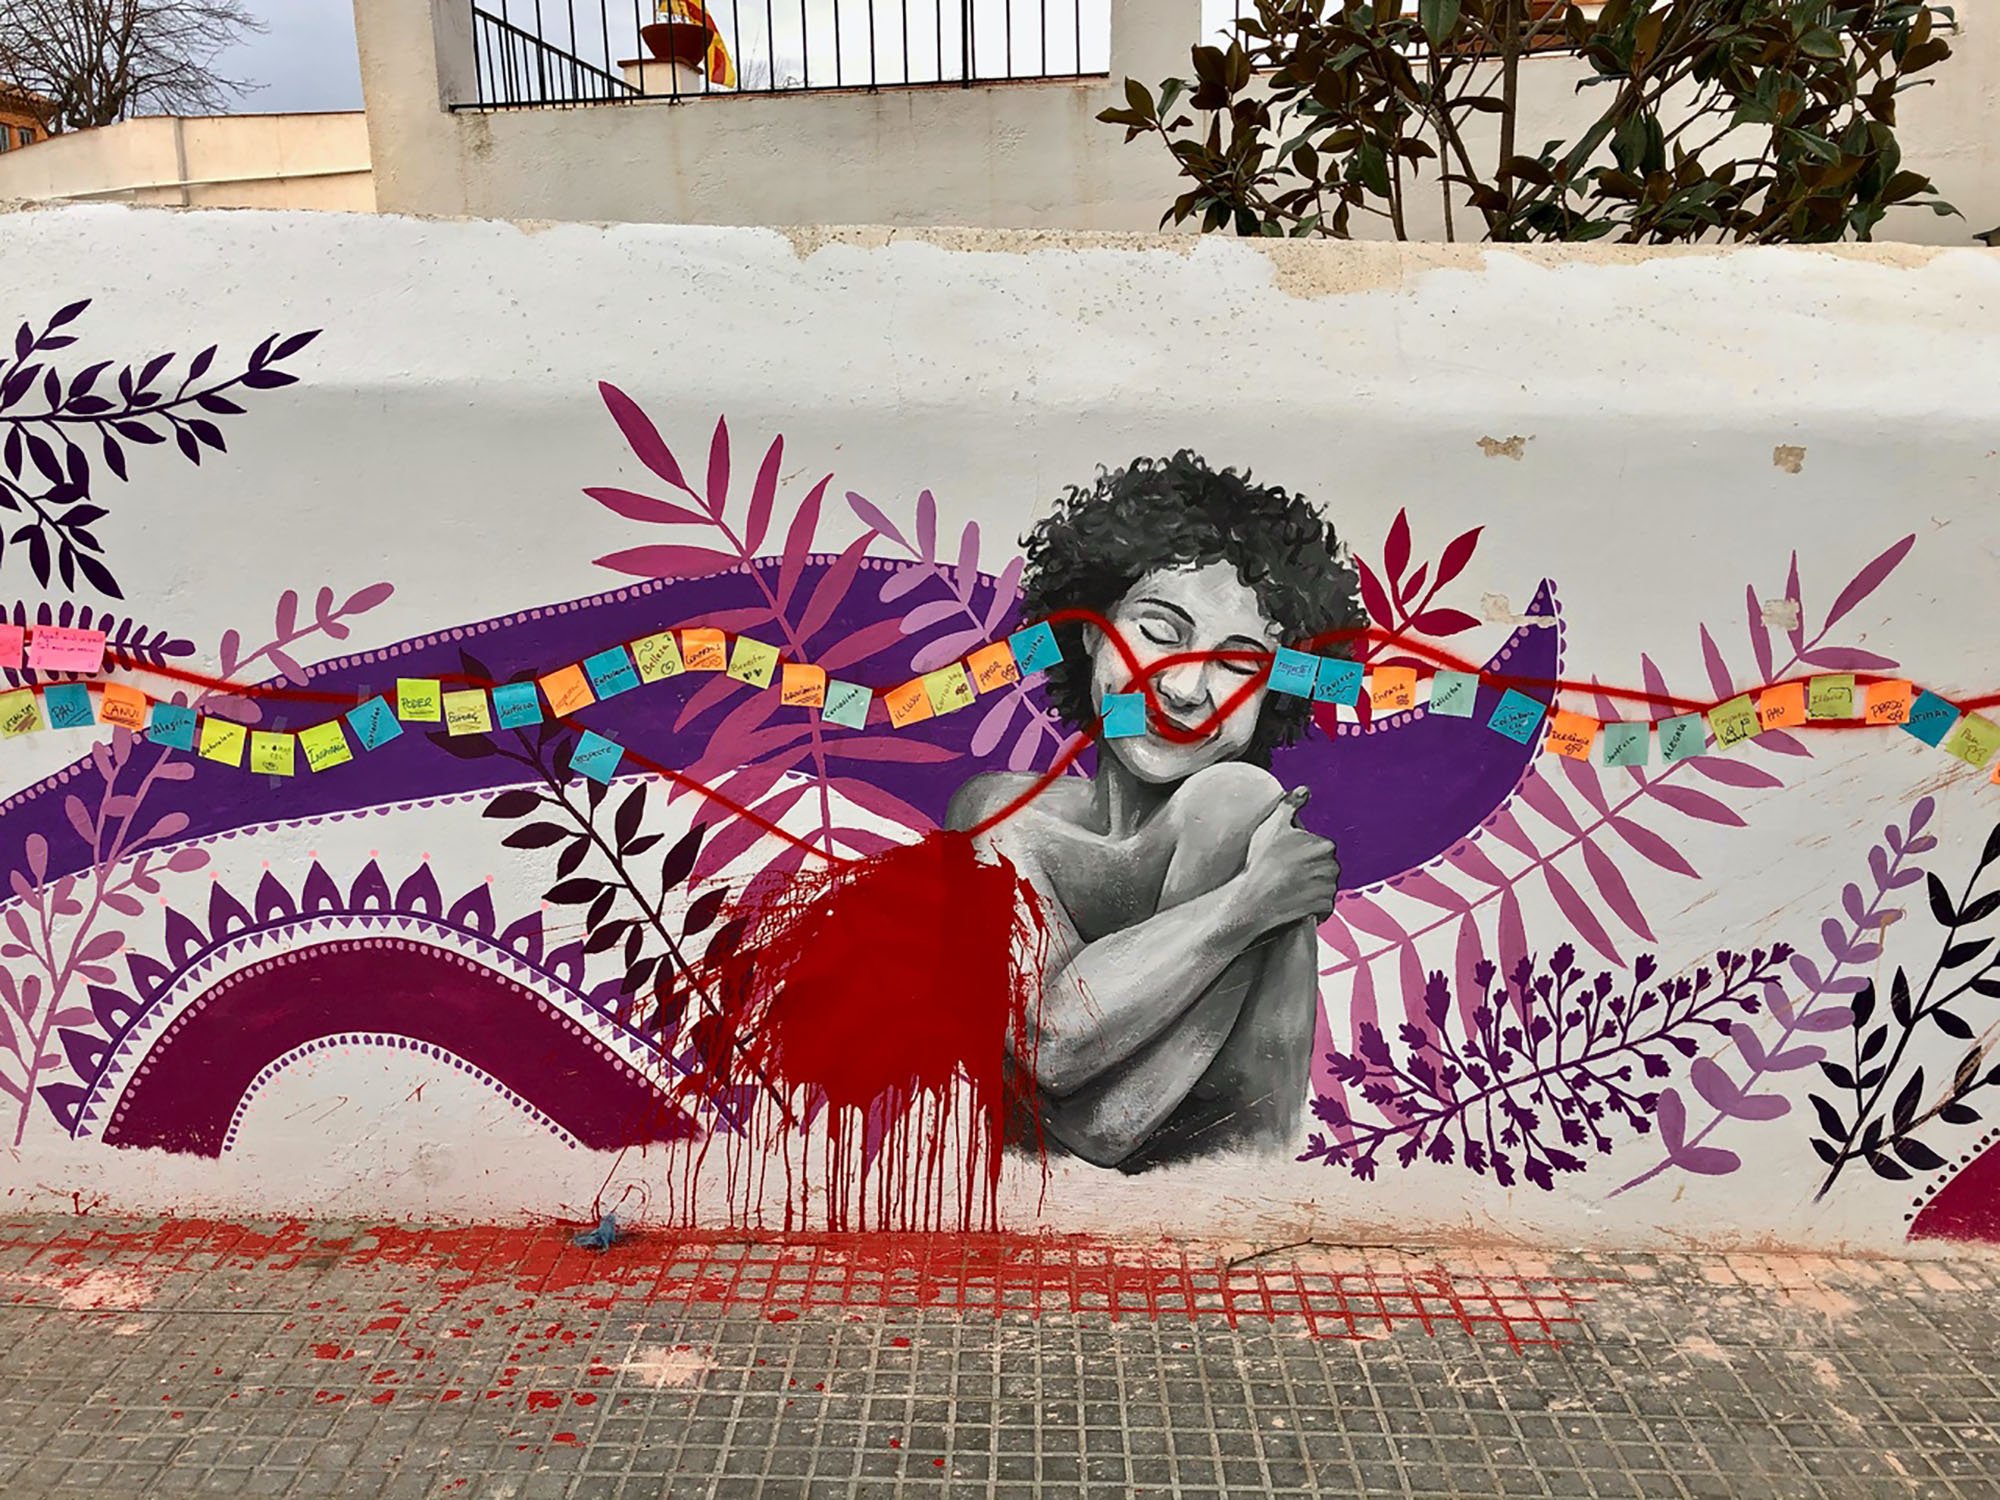 Nos quieren borradas: ataques de odio a un mural feminista en Vilassar de Mar